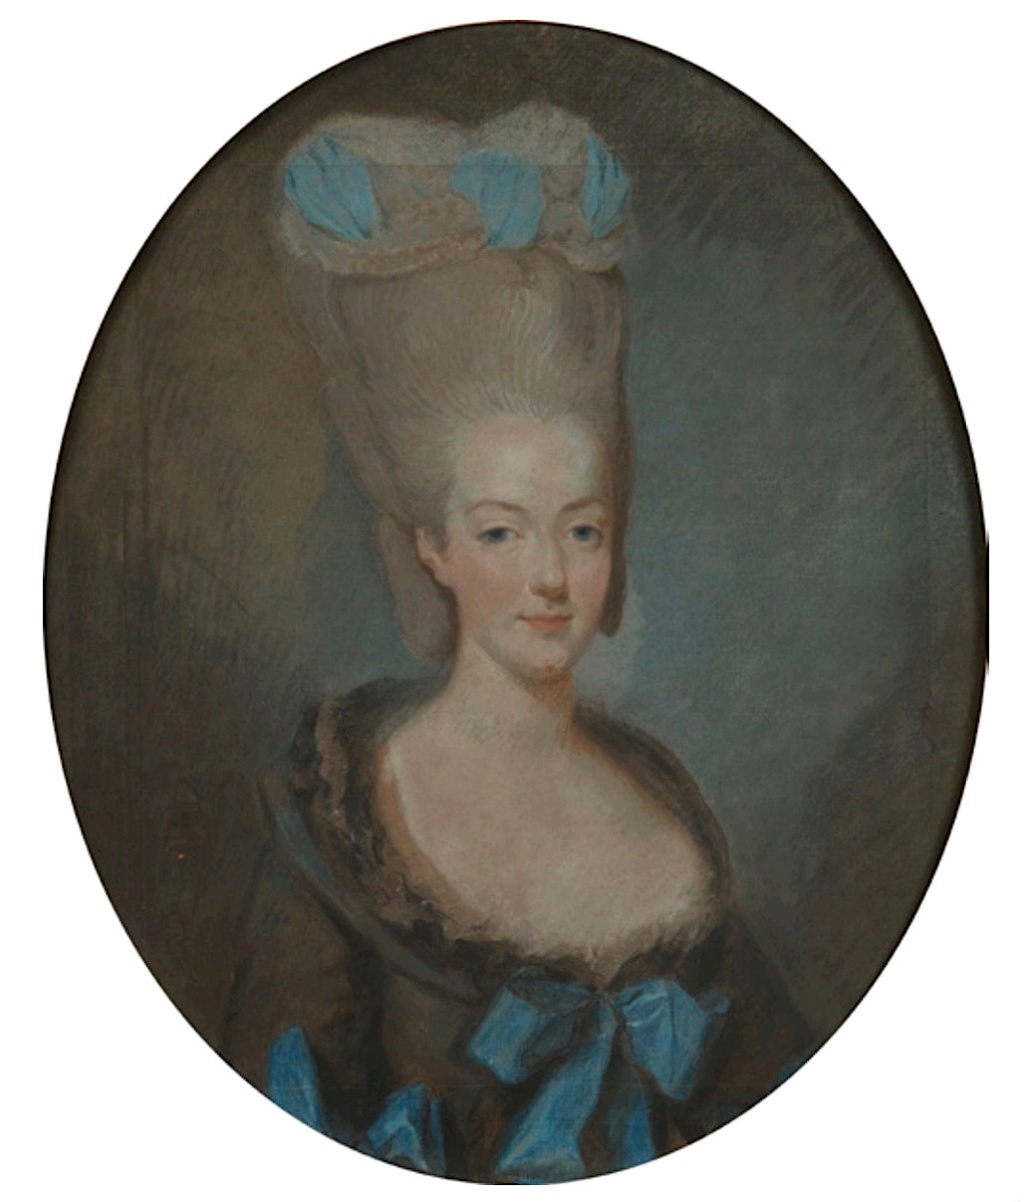 Portraits de Marie-Antoinette en buste par Joseph Ducreux (et d'après) - Page 2 Capt1145